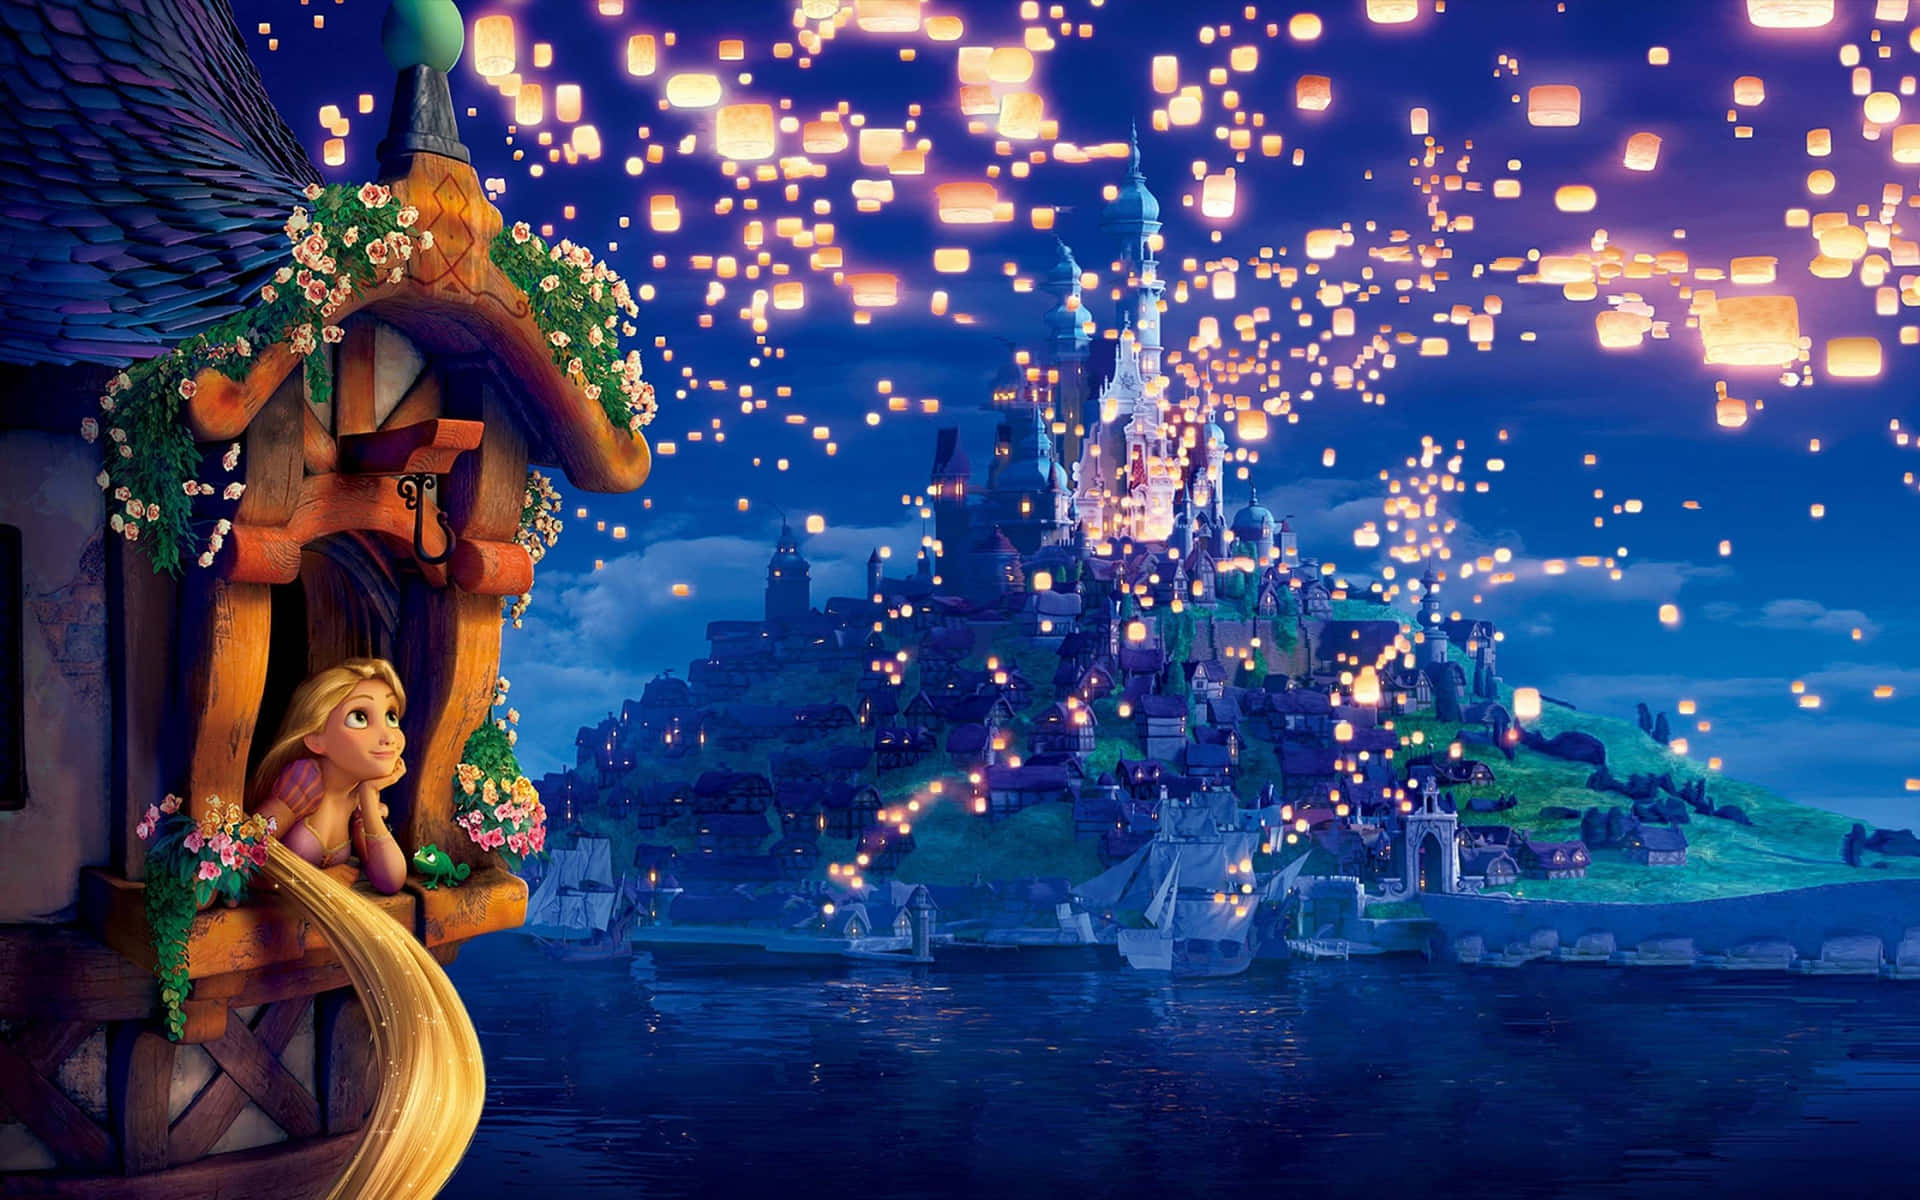 Fondode Pantalla De Ordenador De Disney De Enredados Con Rapunzel Y Las Linternas Voladoras. Fondo de pantalla